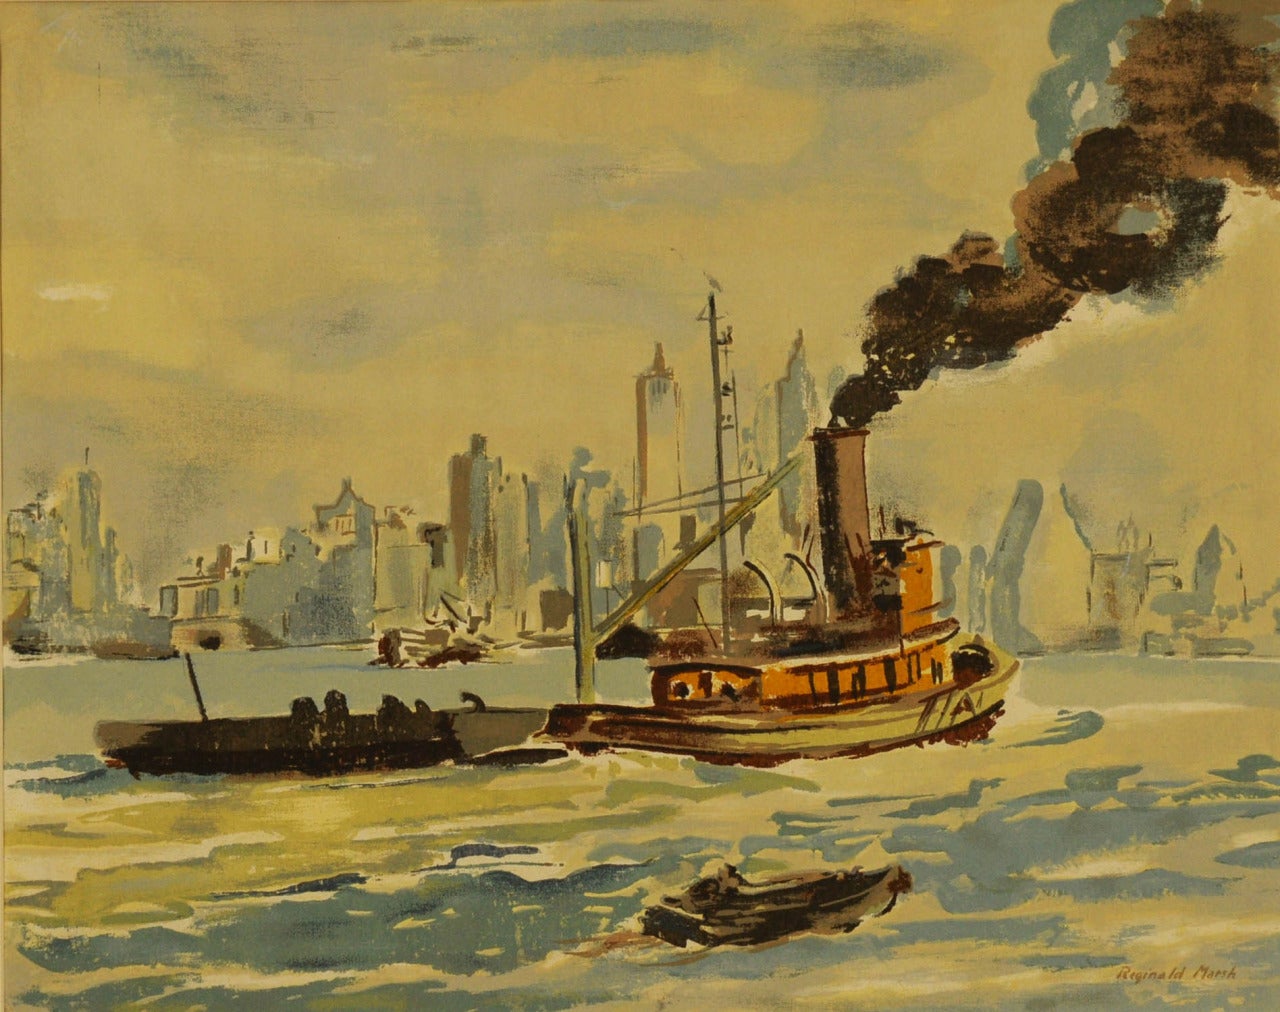 Tug Boat in New York Harbor - Print by Reginald Marsh